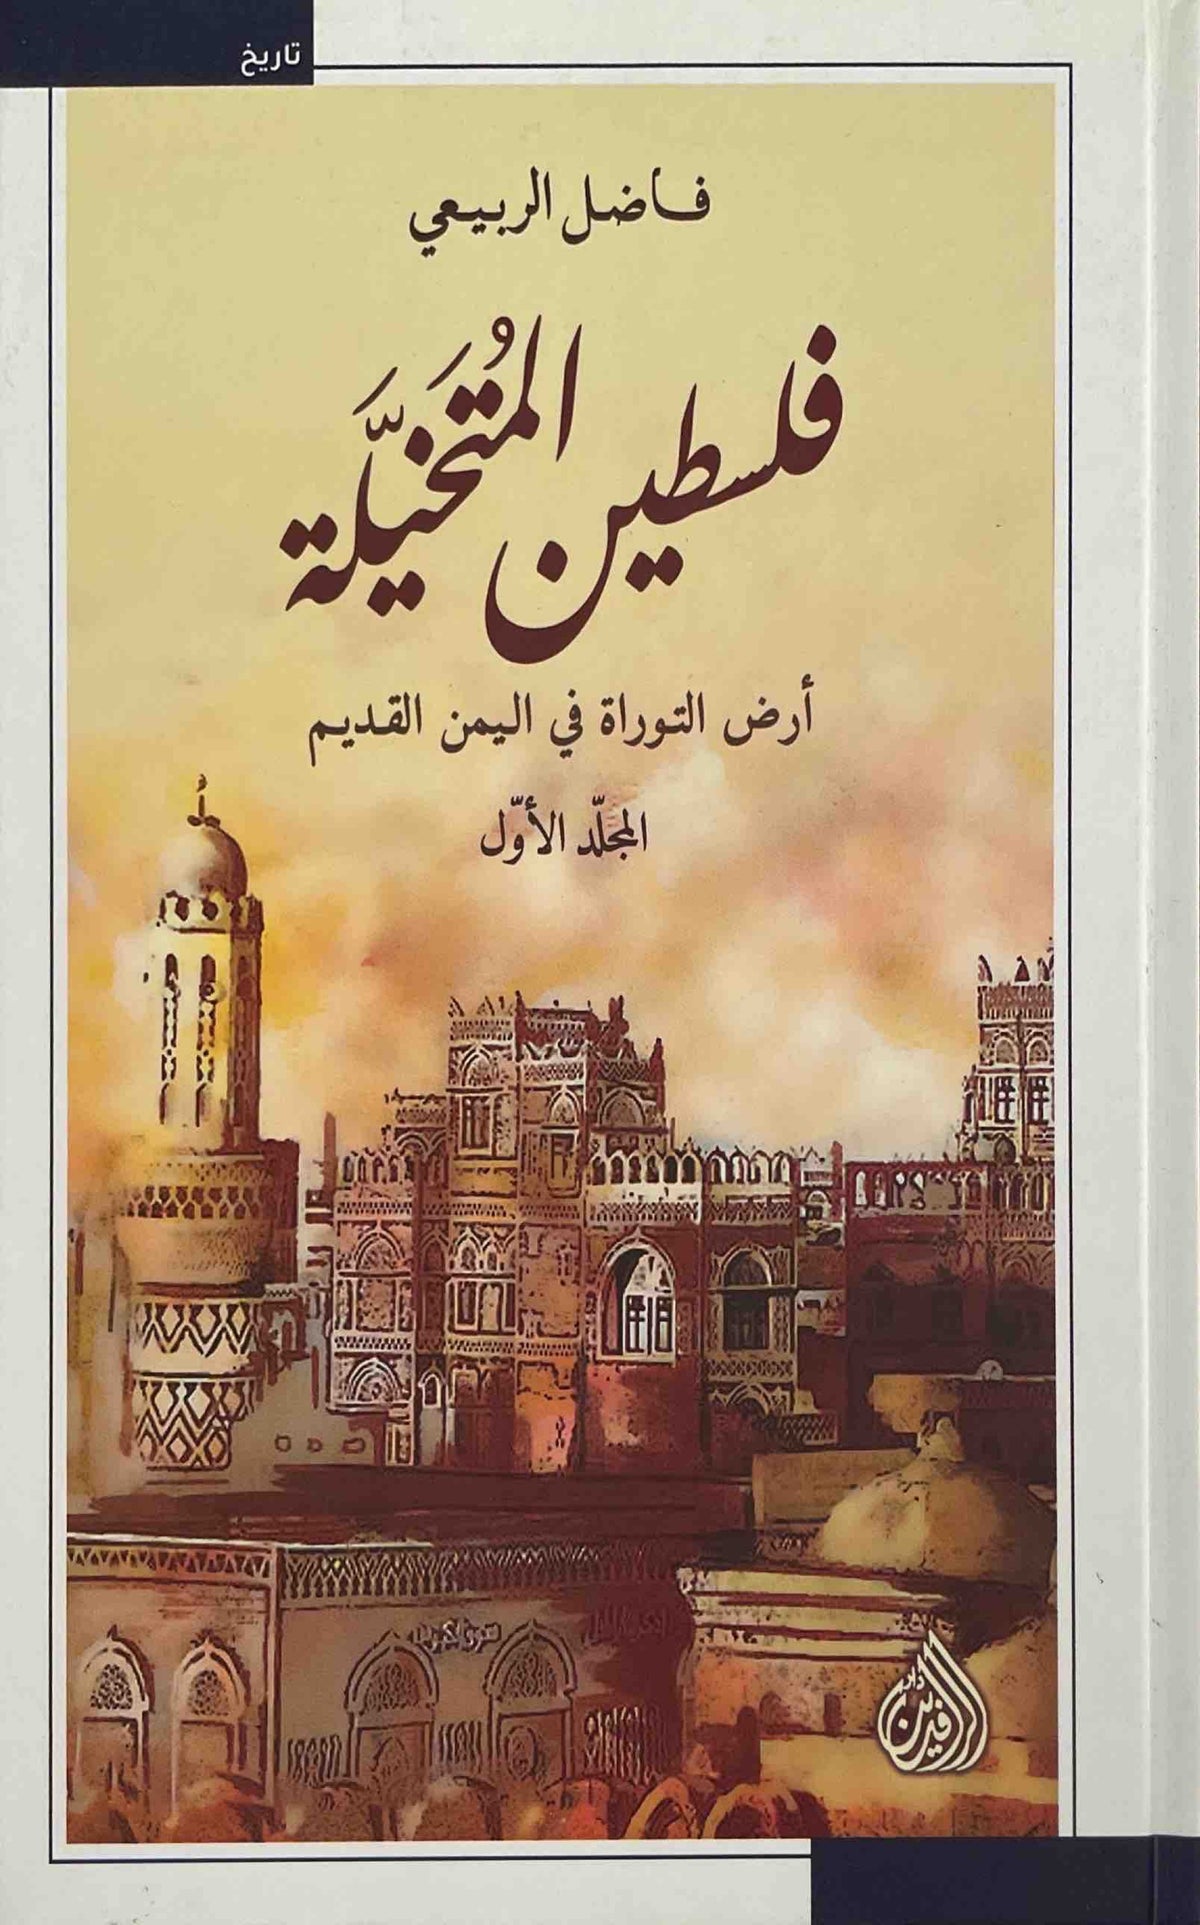 فلسطين المتخيلة : ارض التوراة في اليمن القديم - المجلد الأول والثاني